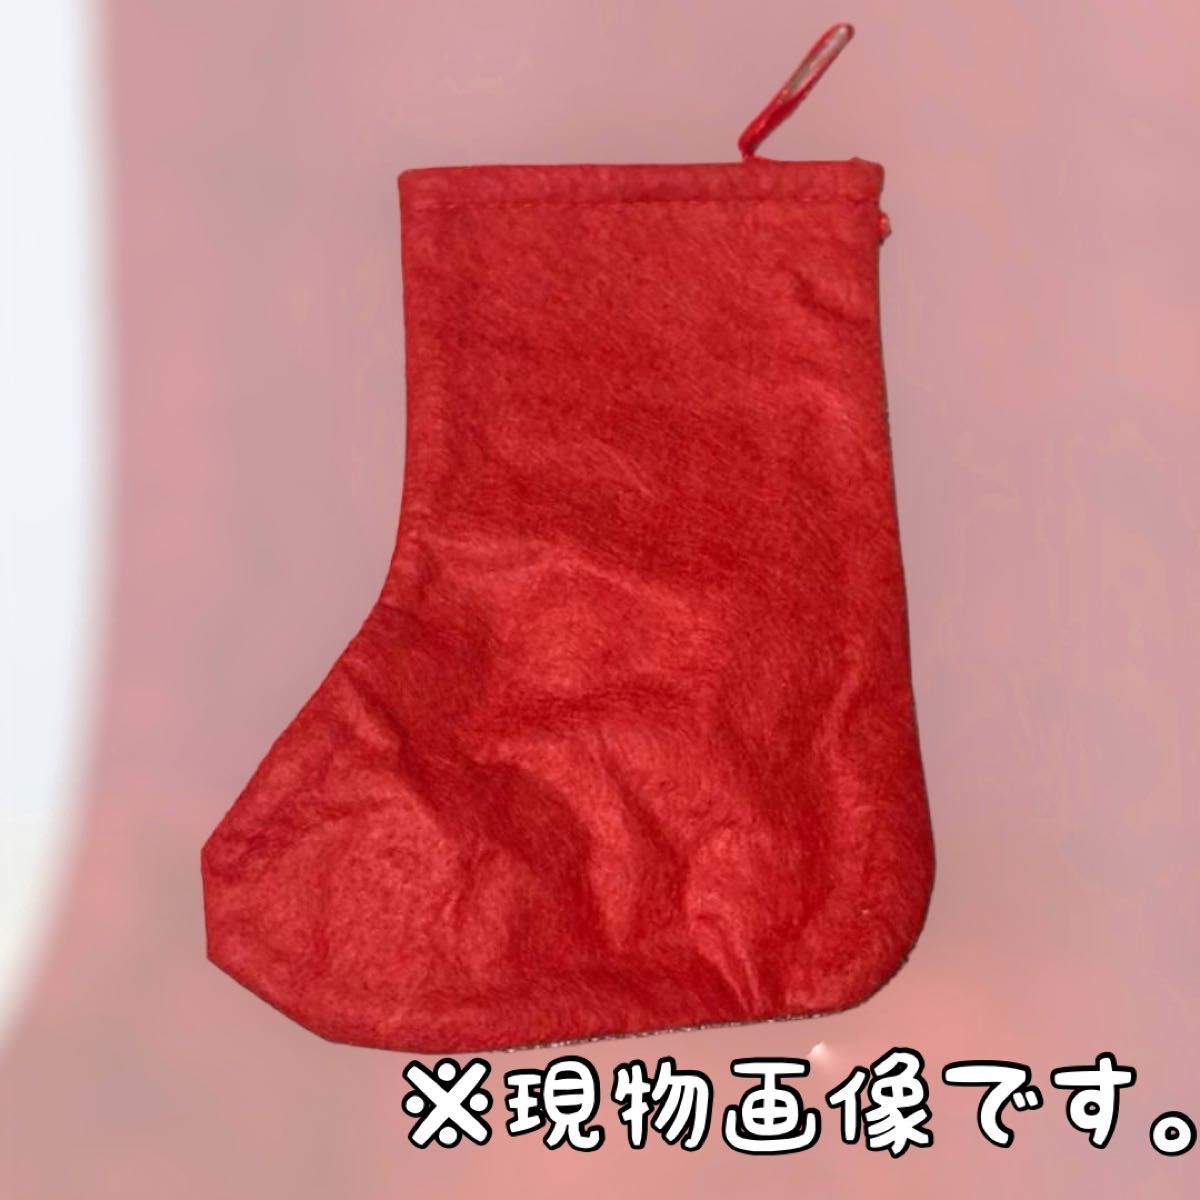 【新品未使用】クリスマス 靴下 オーナメント 3点セット 飾り サンタ スノーマン トナカイ